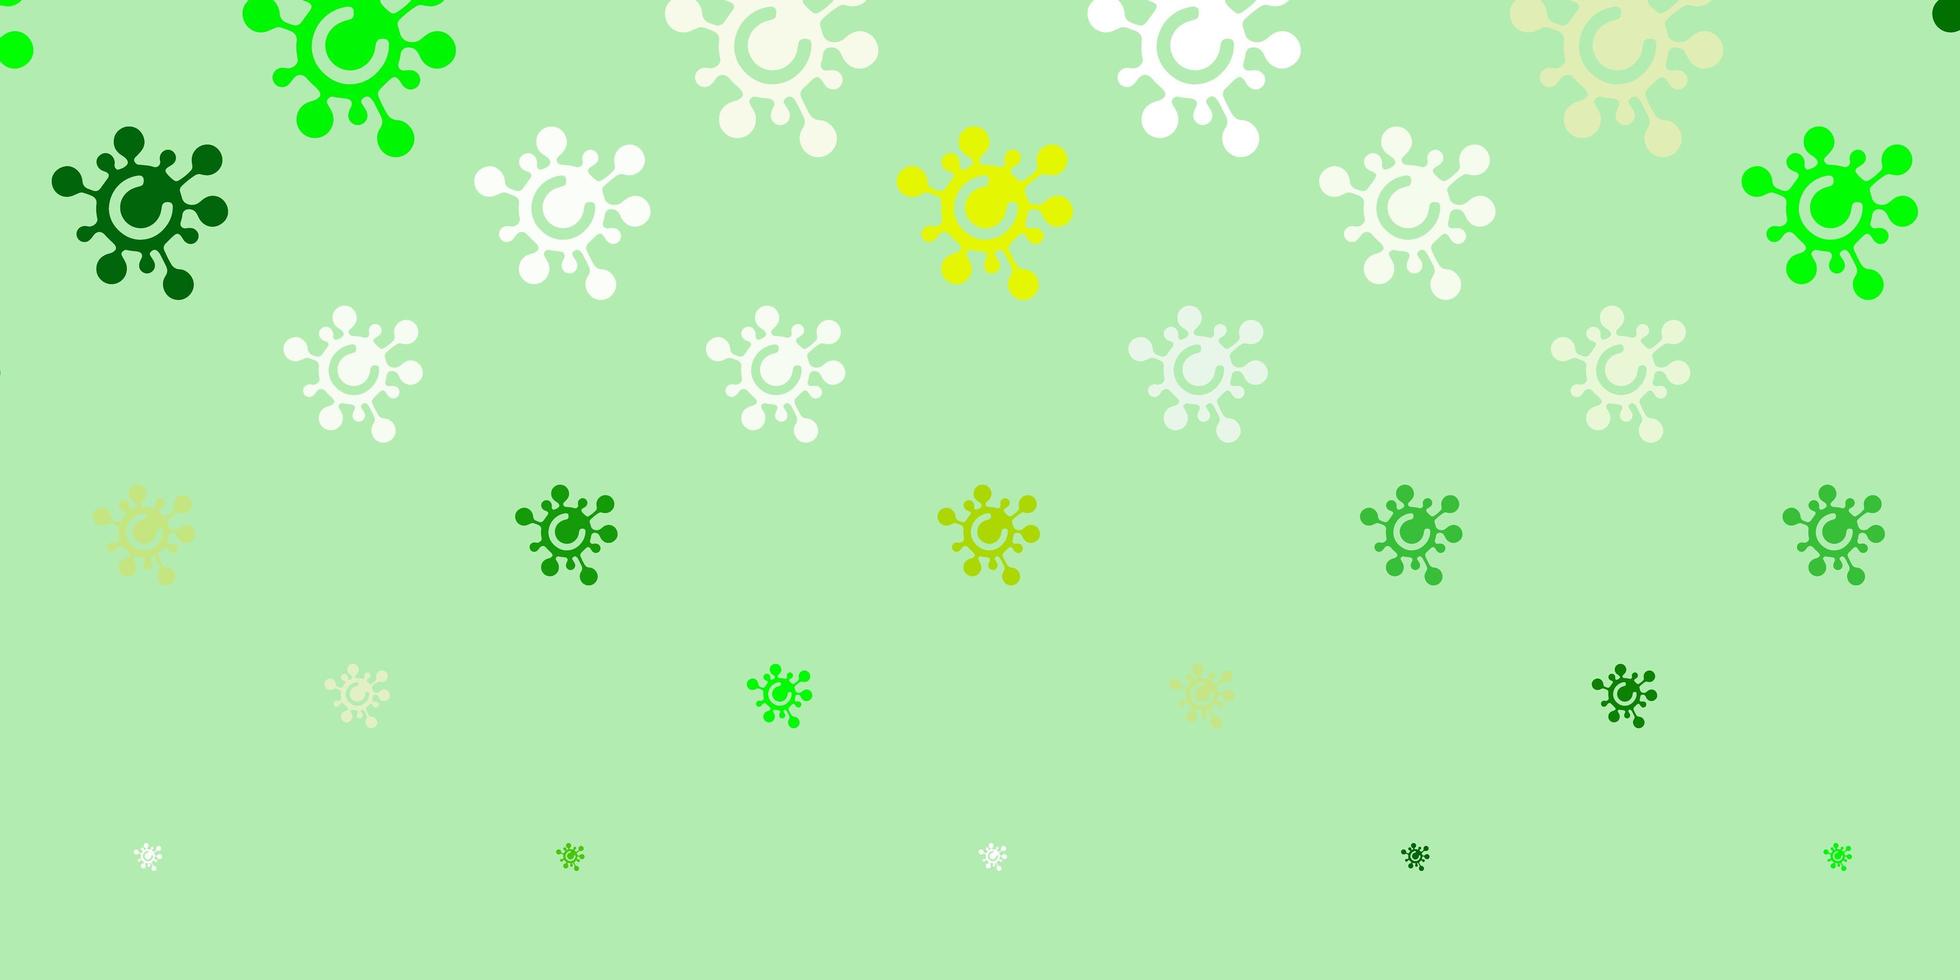 toile de fond de vecteur vert clair, jaune avec symboles de virus.